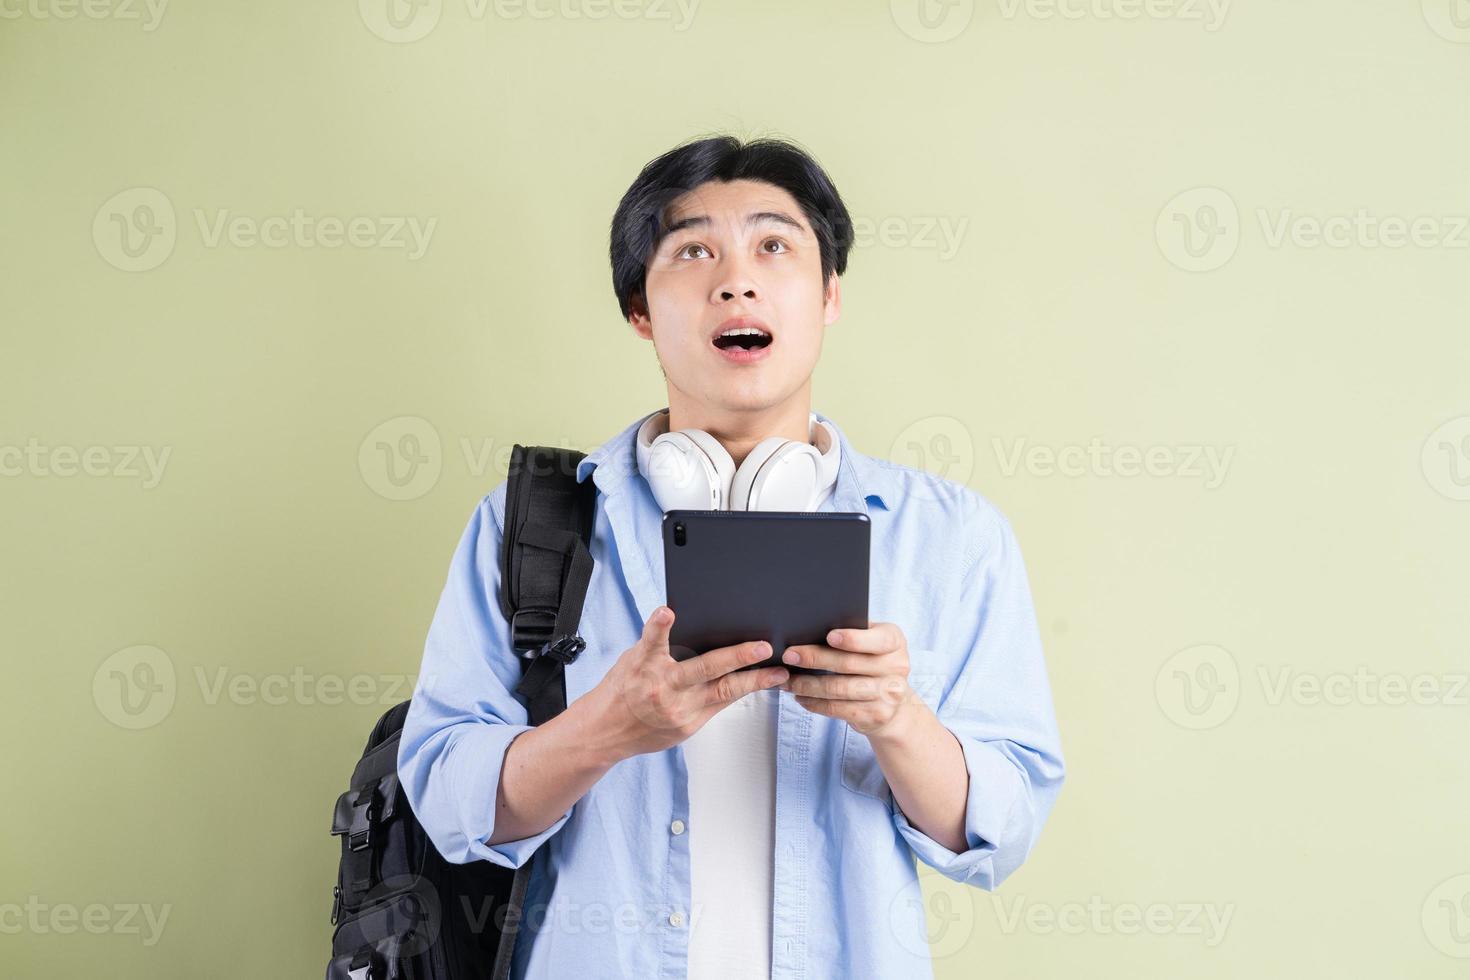 männlicher asiatischer Student, der das Tablet benutzte und mit einem überraschten Gesichtsausdruck aufsah foto